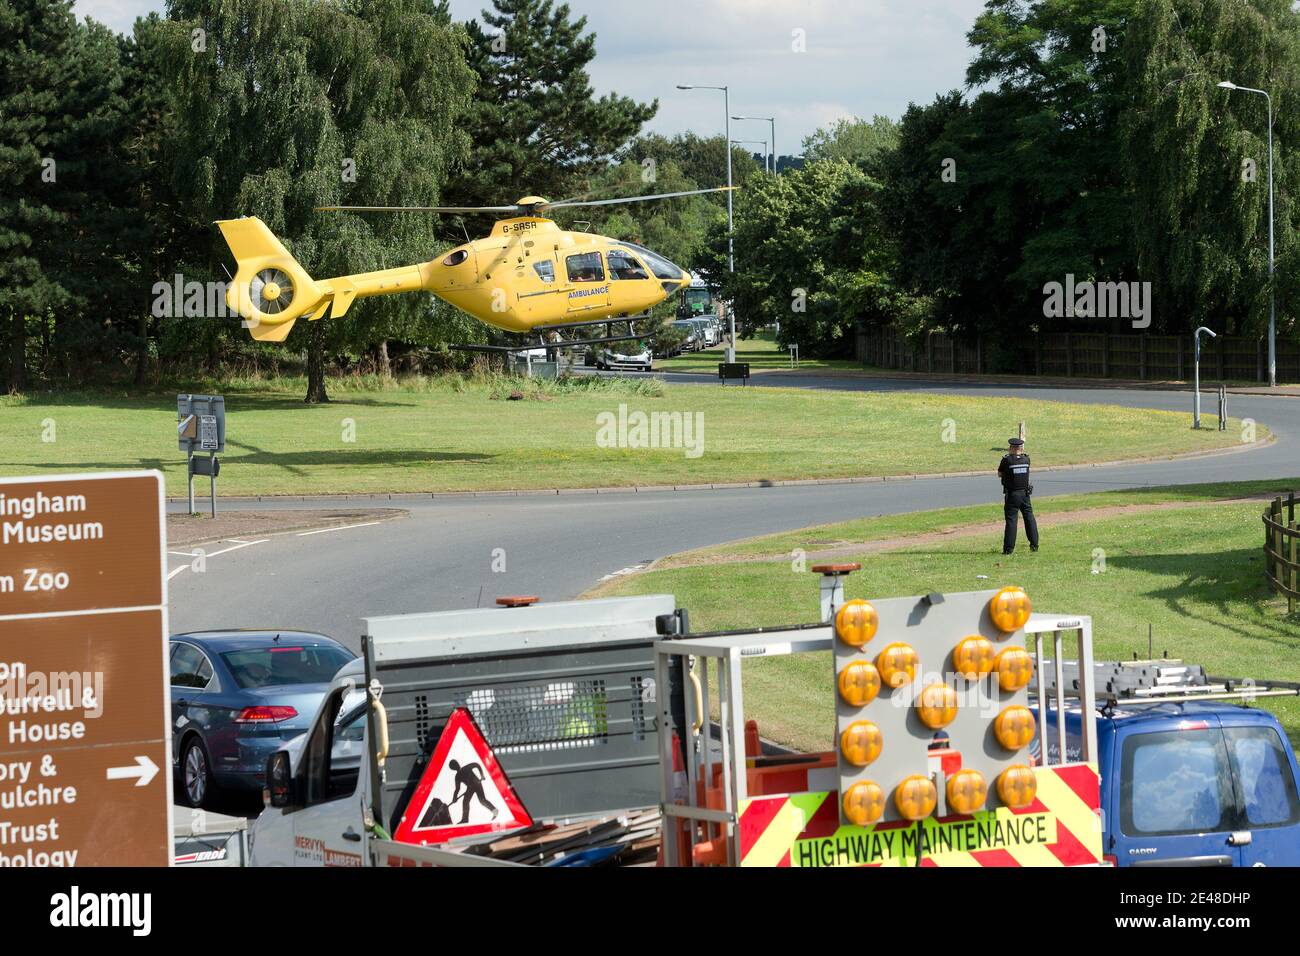 L'hélicoptère de sauvetage East Anglian Air Ambulance atterrit sur un rond-point de l'autoroute britannique pour transporter une personne blessée à l'hôpital. Banque D'Images